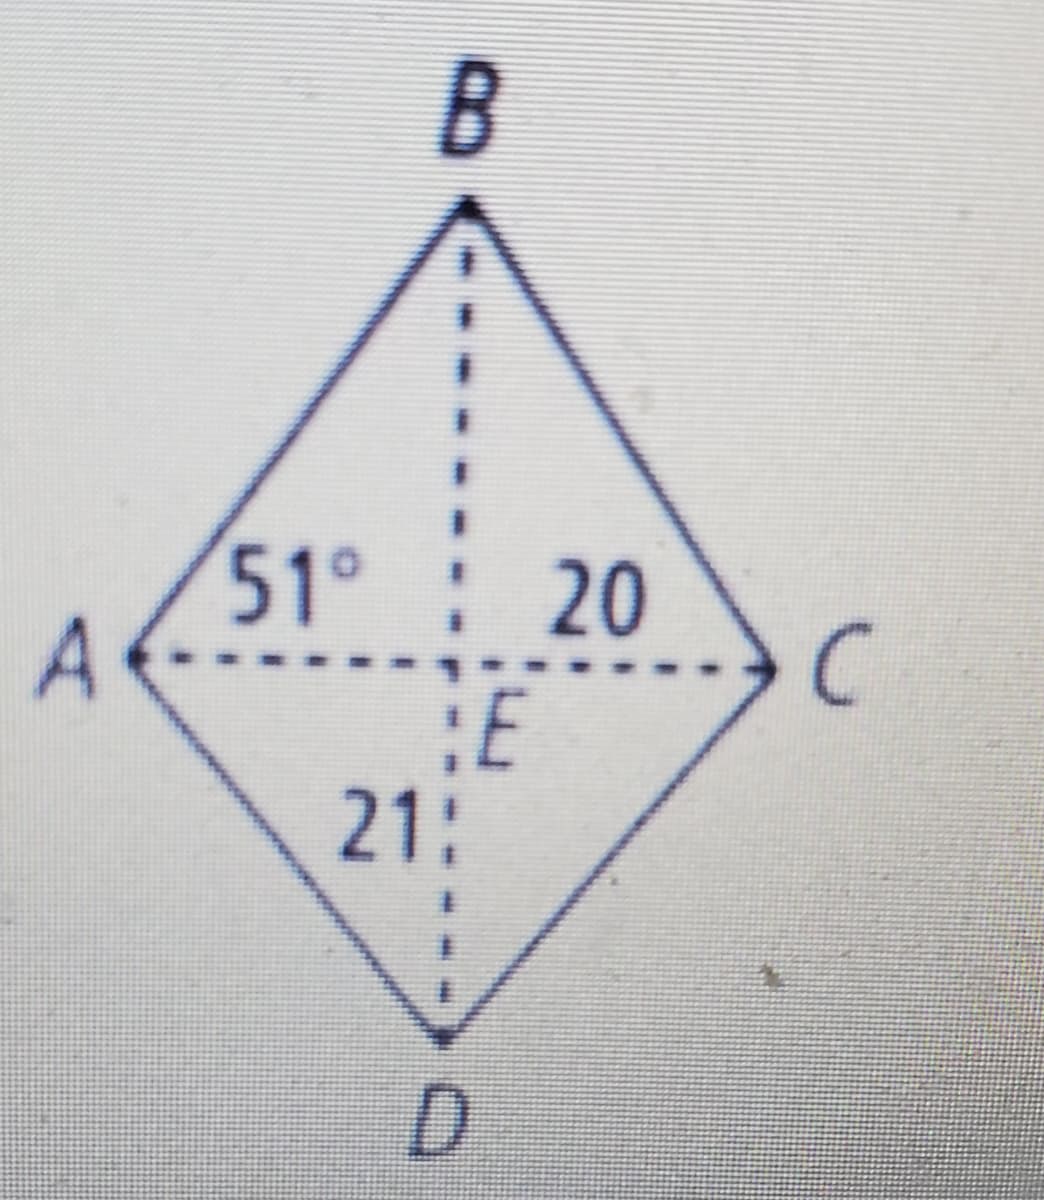 %3D
51° 20
C
:E
21:
D.
